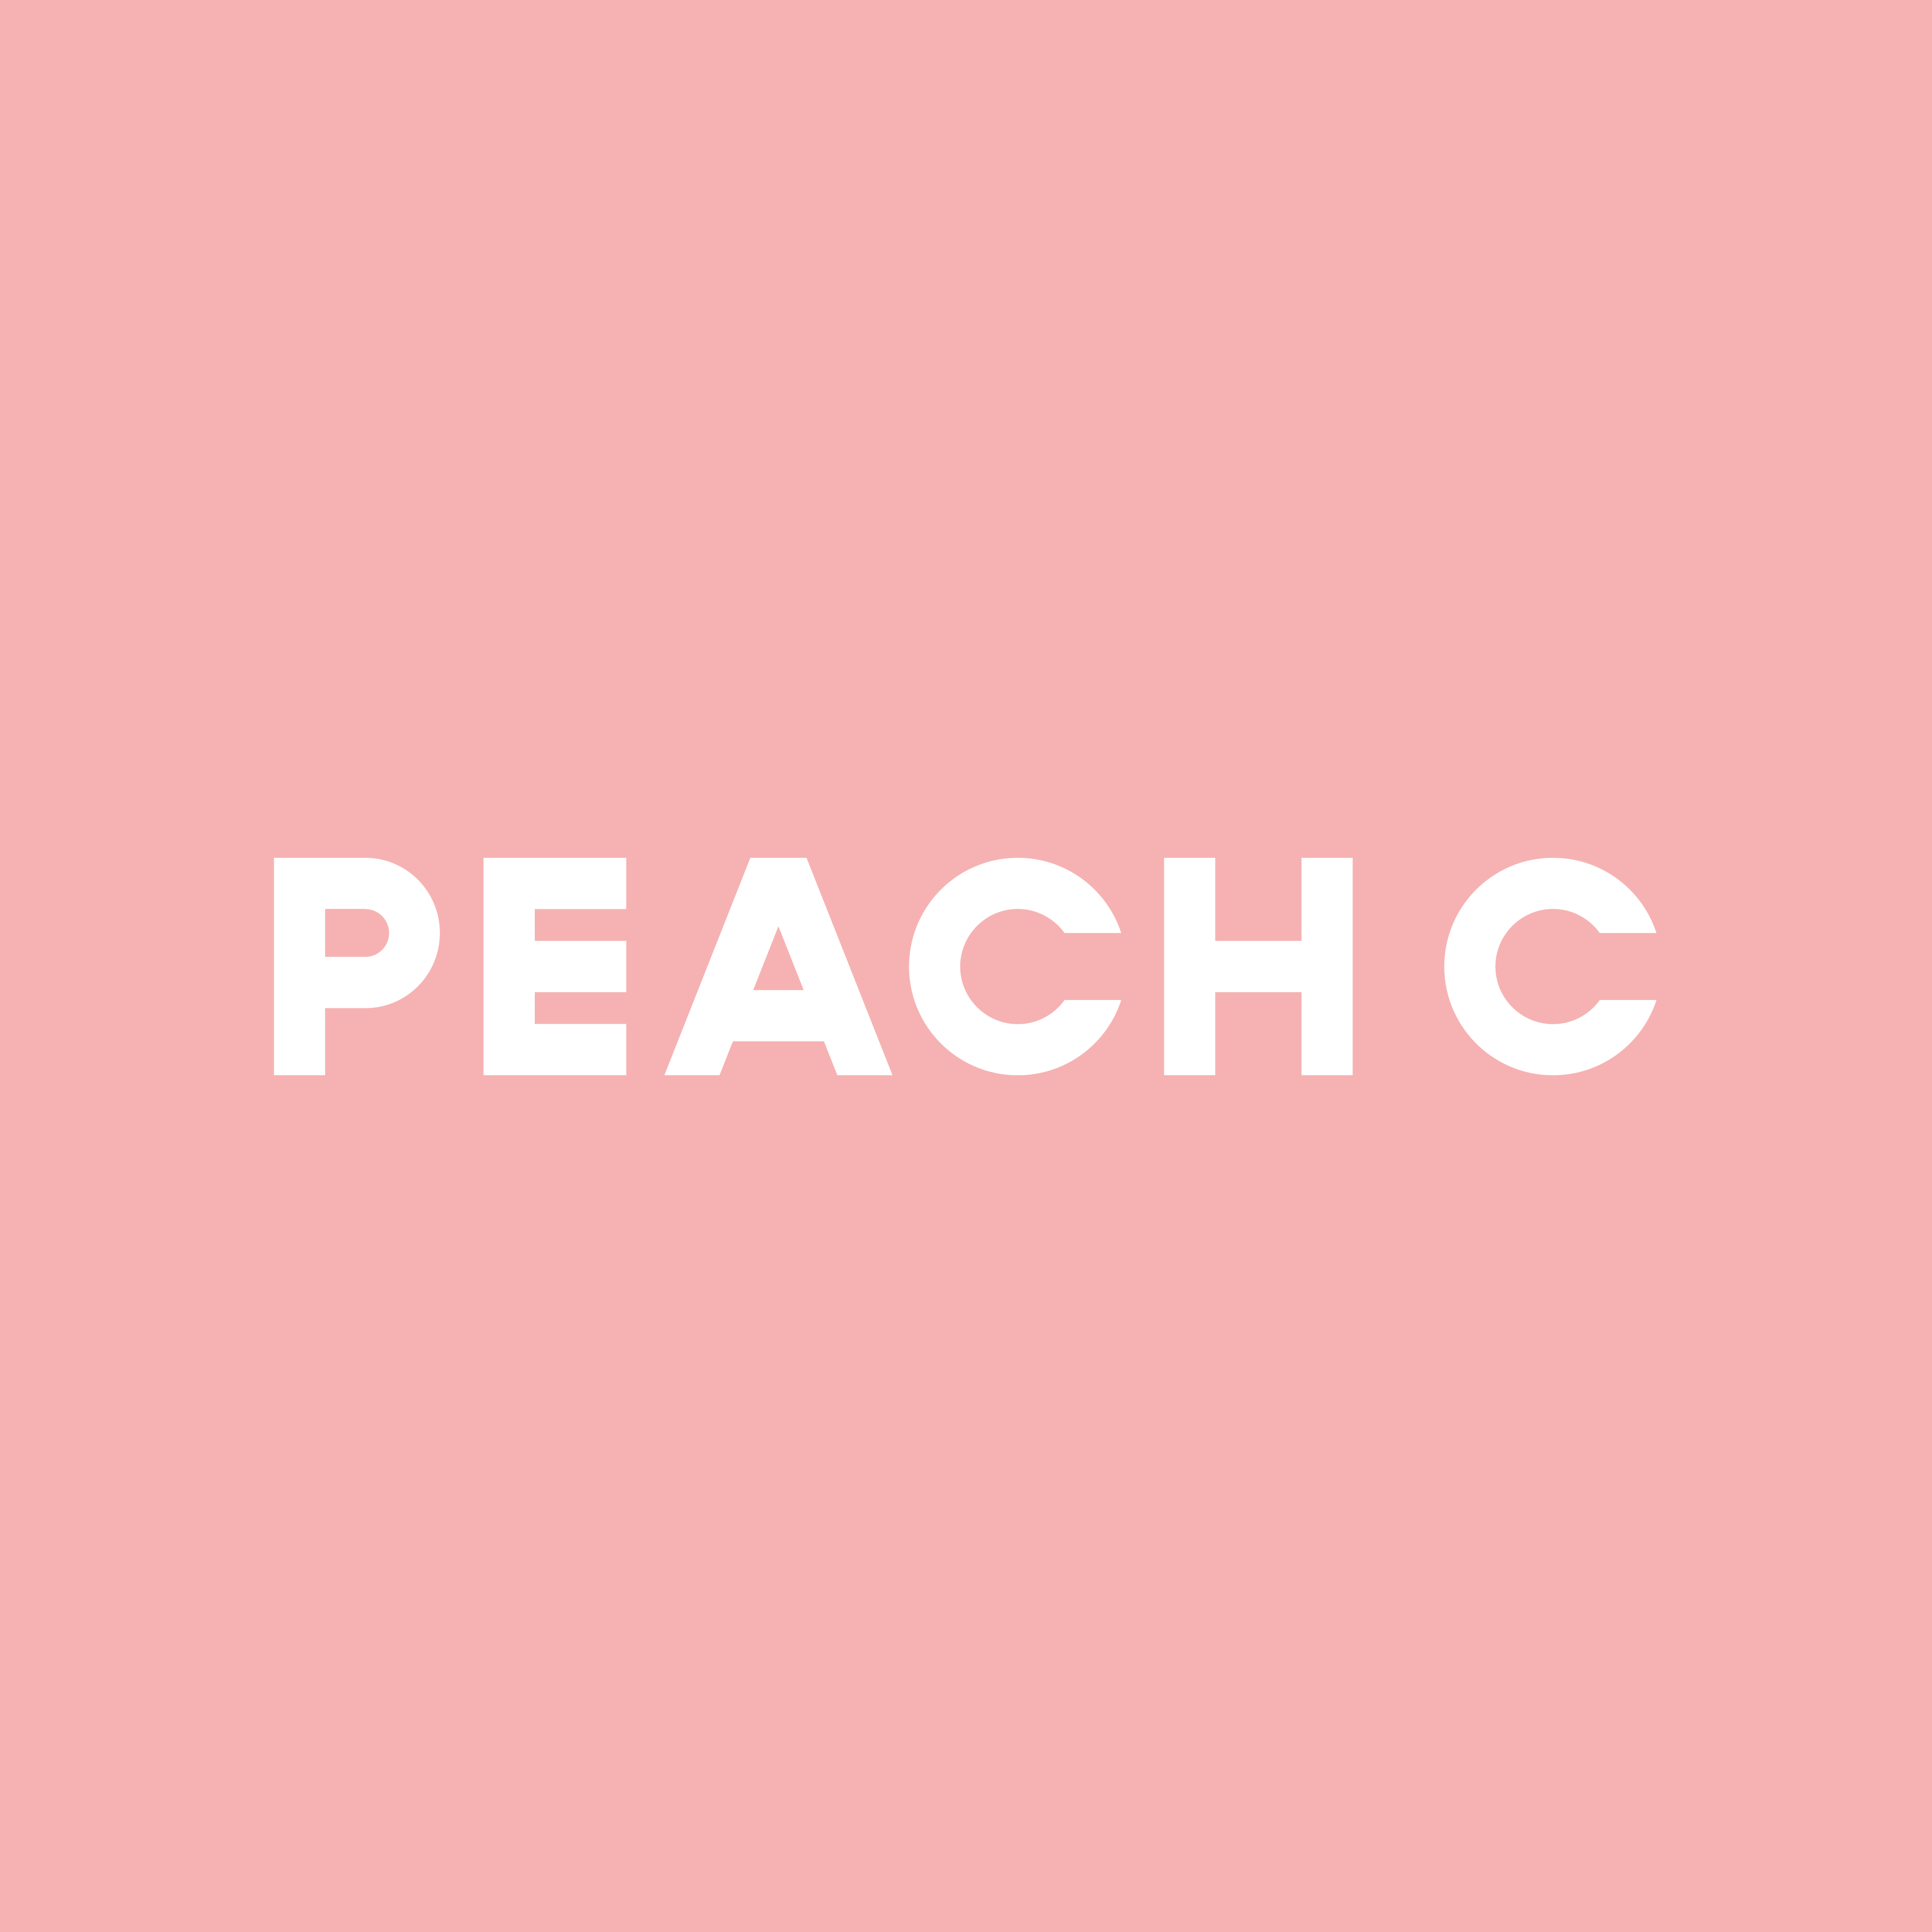 美容大国・韓国発！注目の“果汁顔メイク”ブランド「PEACH C」の
期間限定店が大阪に登場、
K-POPアイドルグループ「IVE」のレイと会える購入者特典も